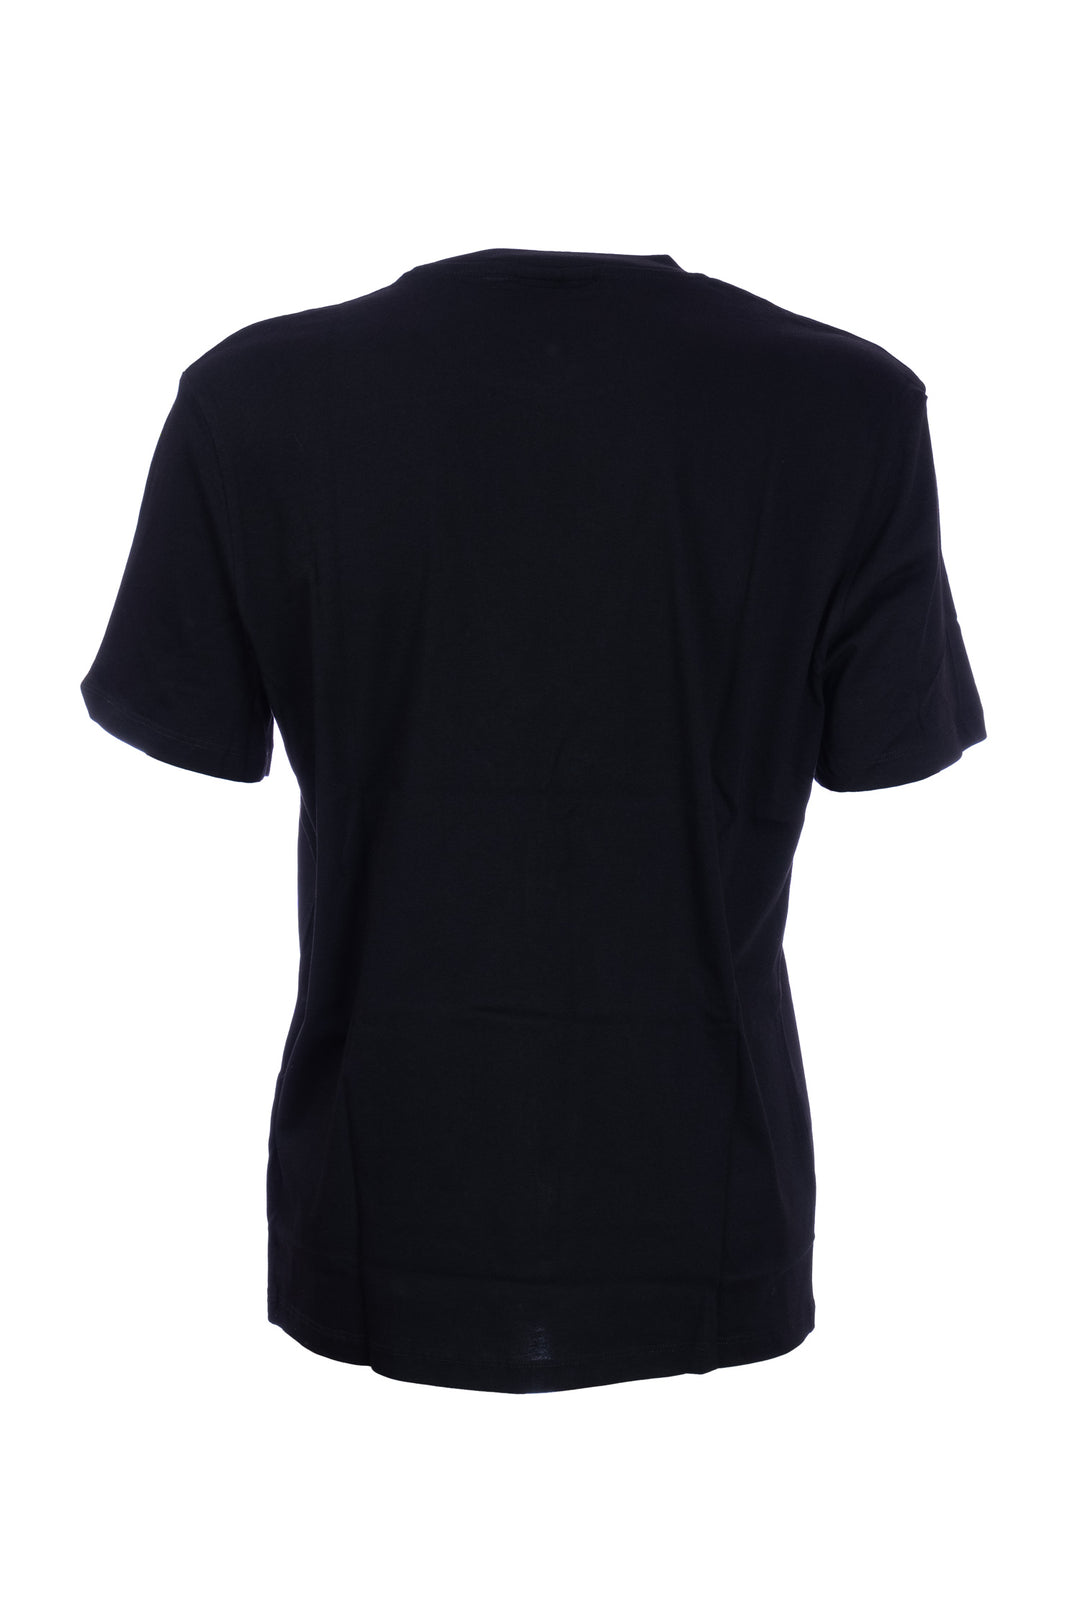 GAELLE T-shirt nera in cotone con logo stampato - Mancinelli 1954